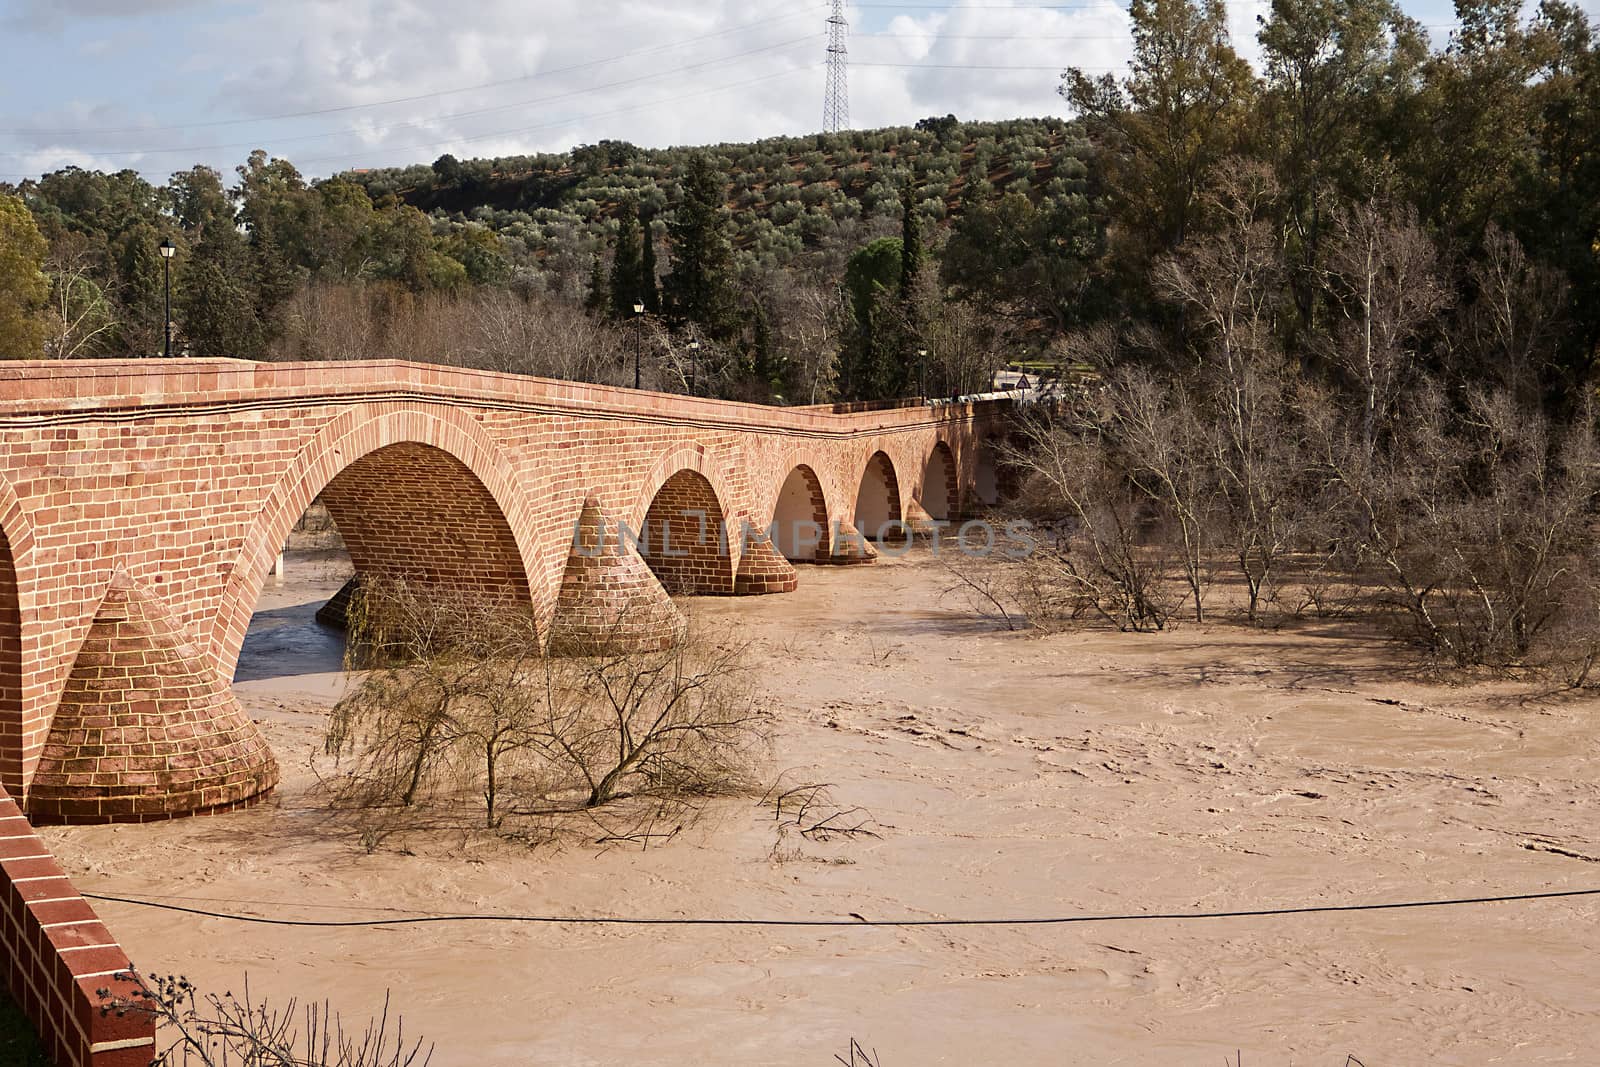 Guadalquivir River passing through Andujar, Jaen province, Andalusia, Spain